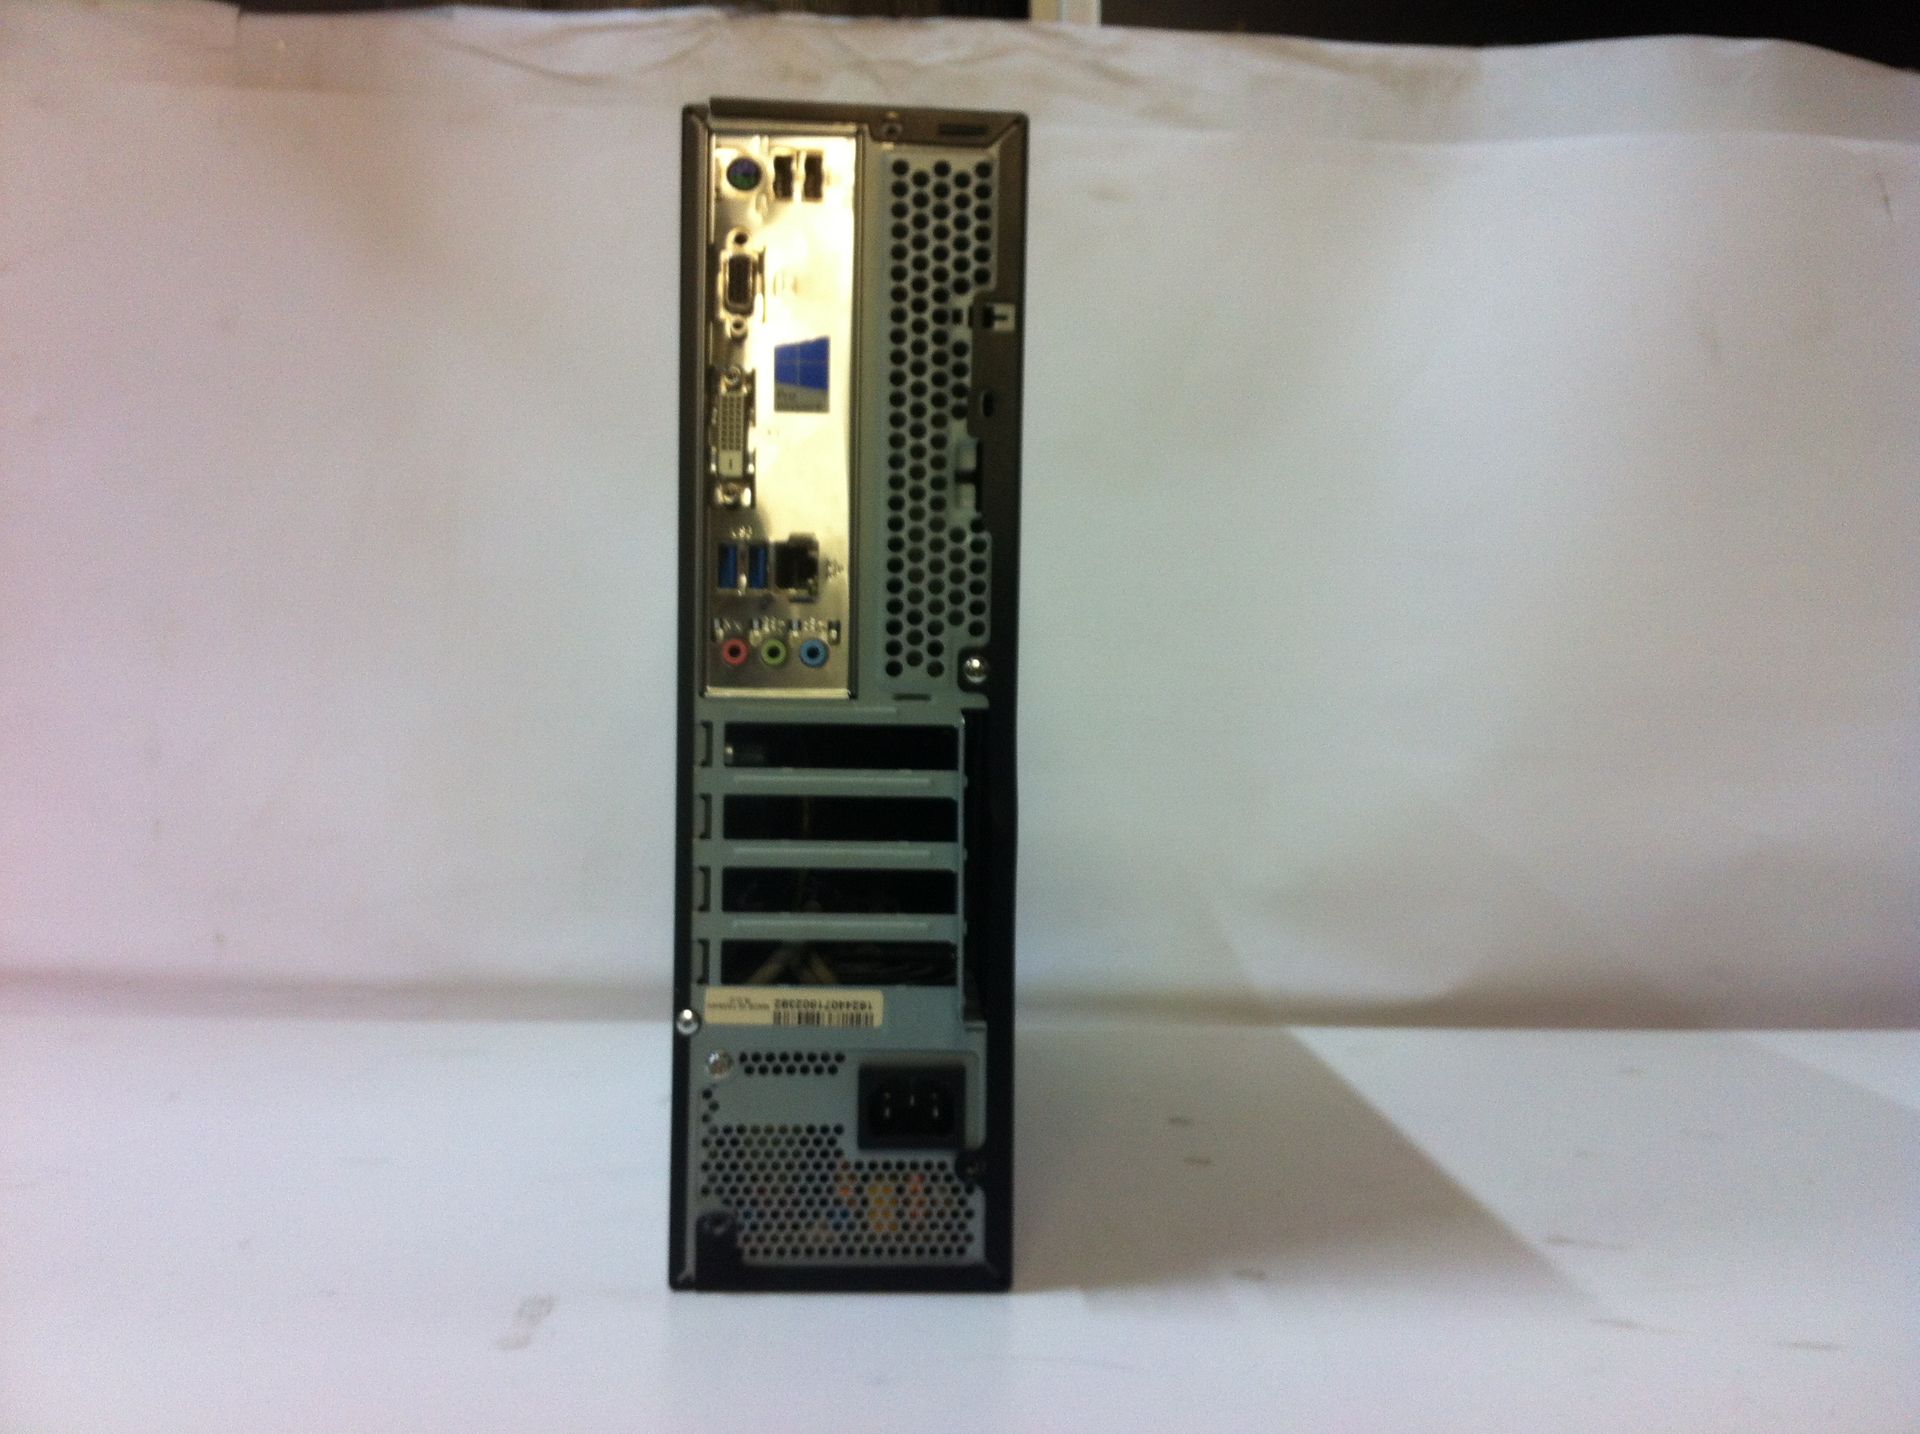 ZooStorm desktop PC tower - Image 3 of 3